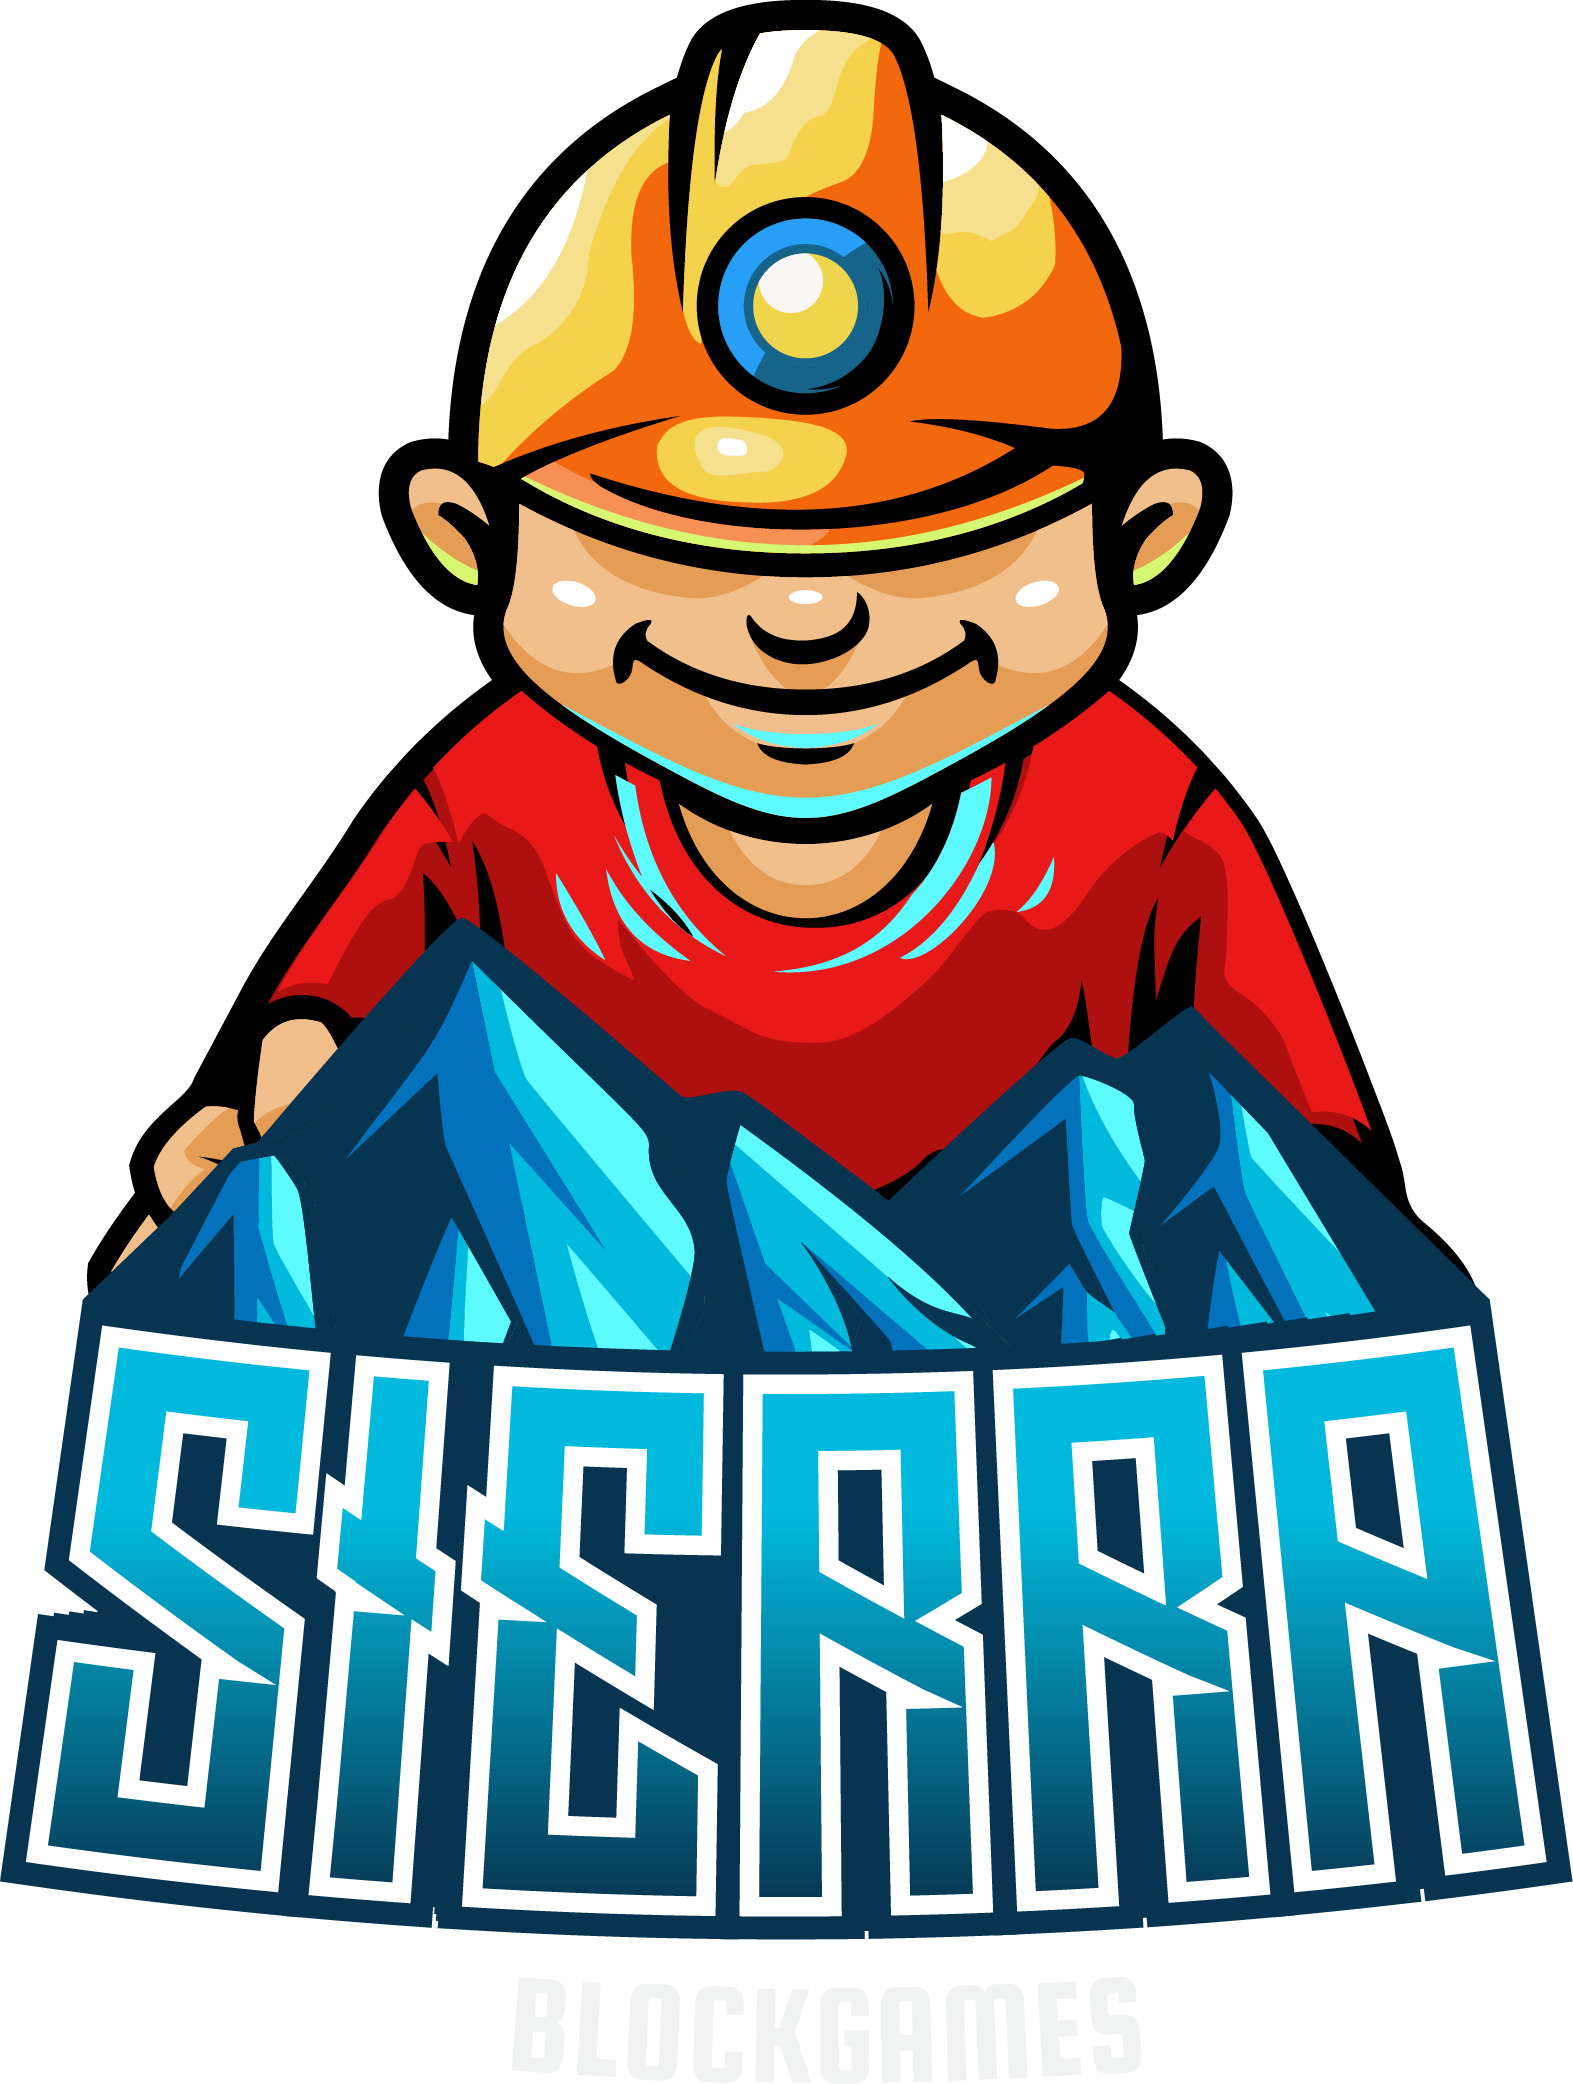 Sierra Blockchain Games Logo